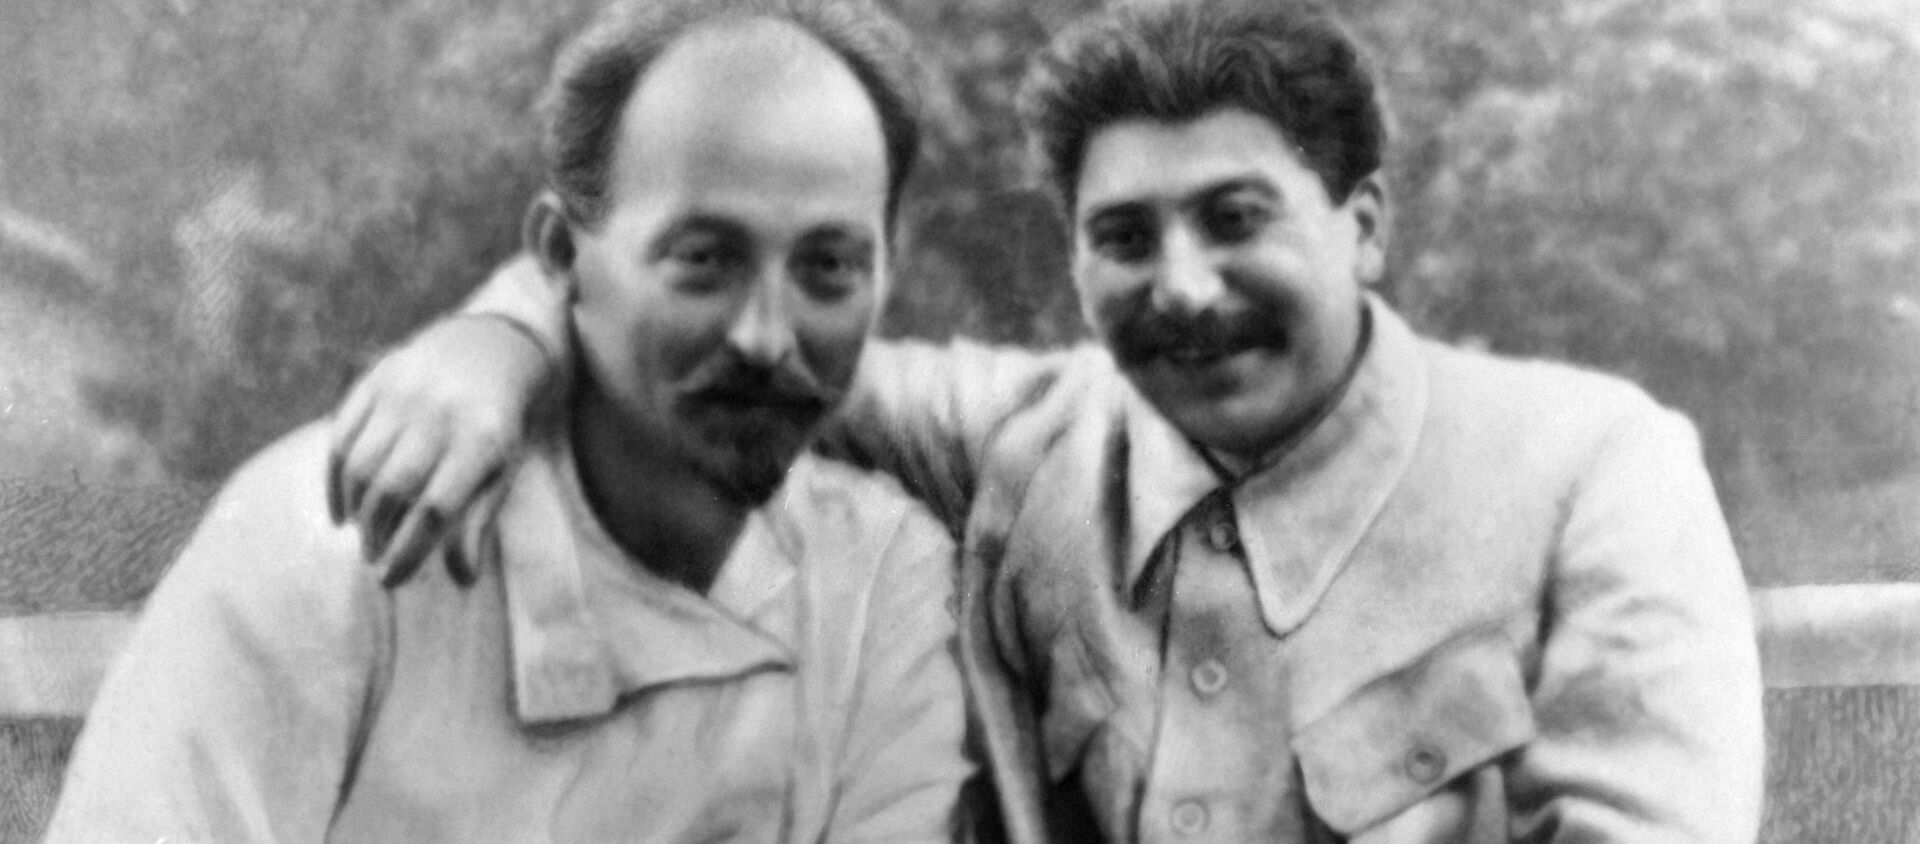 Иосиф Сталин (справа) и Феликс Дзержинский (слева) на отдыхе. - Sputnik Армения, 1920, 31.03.2021